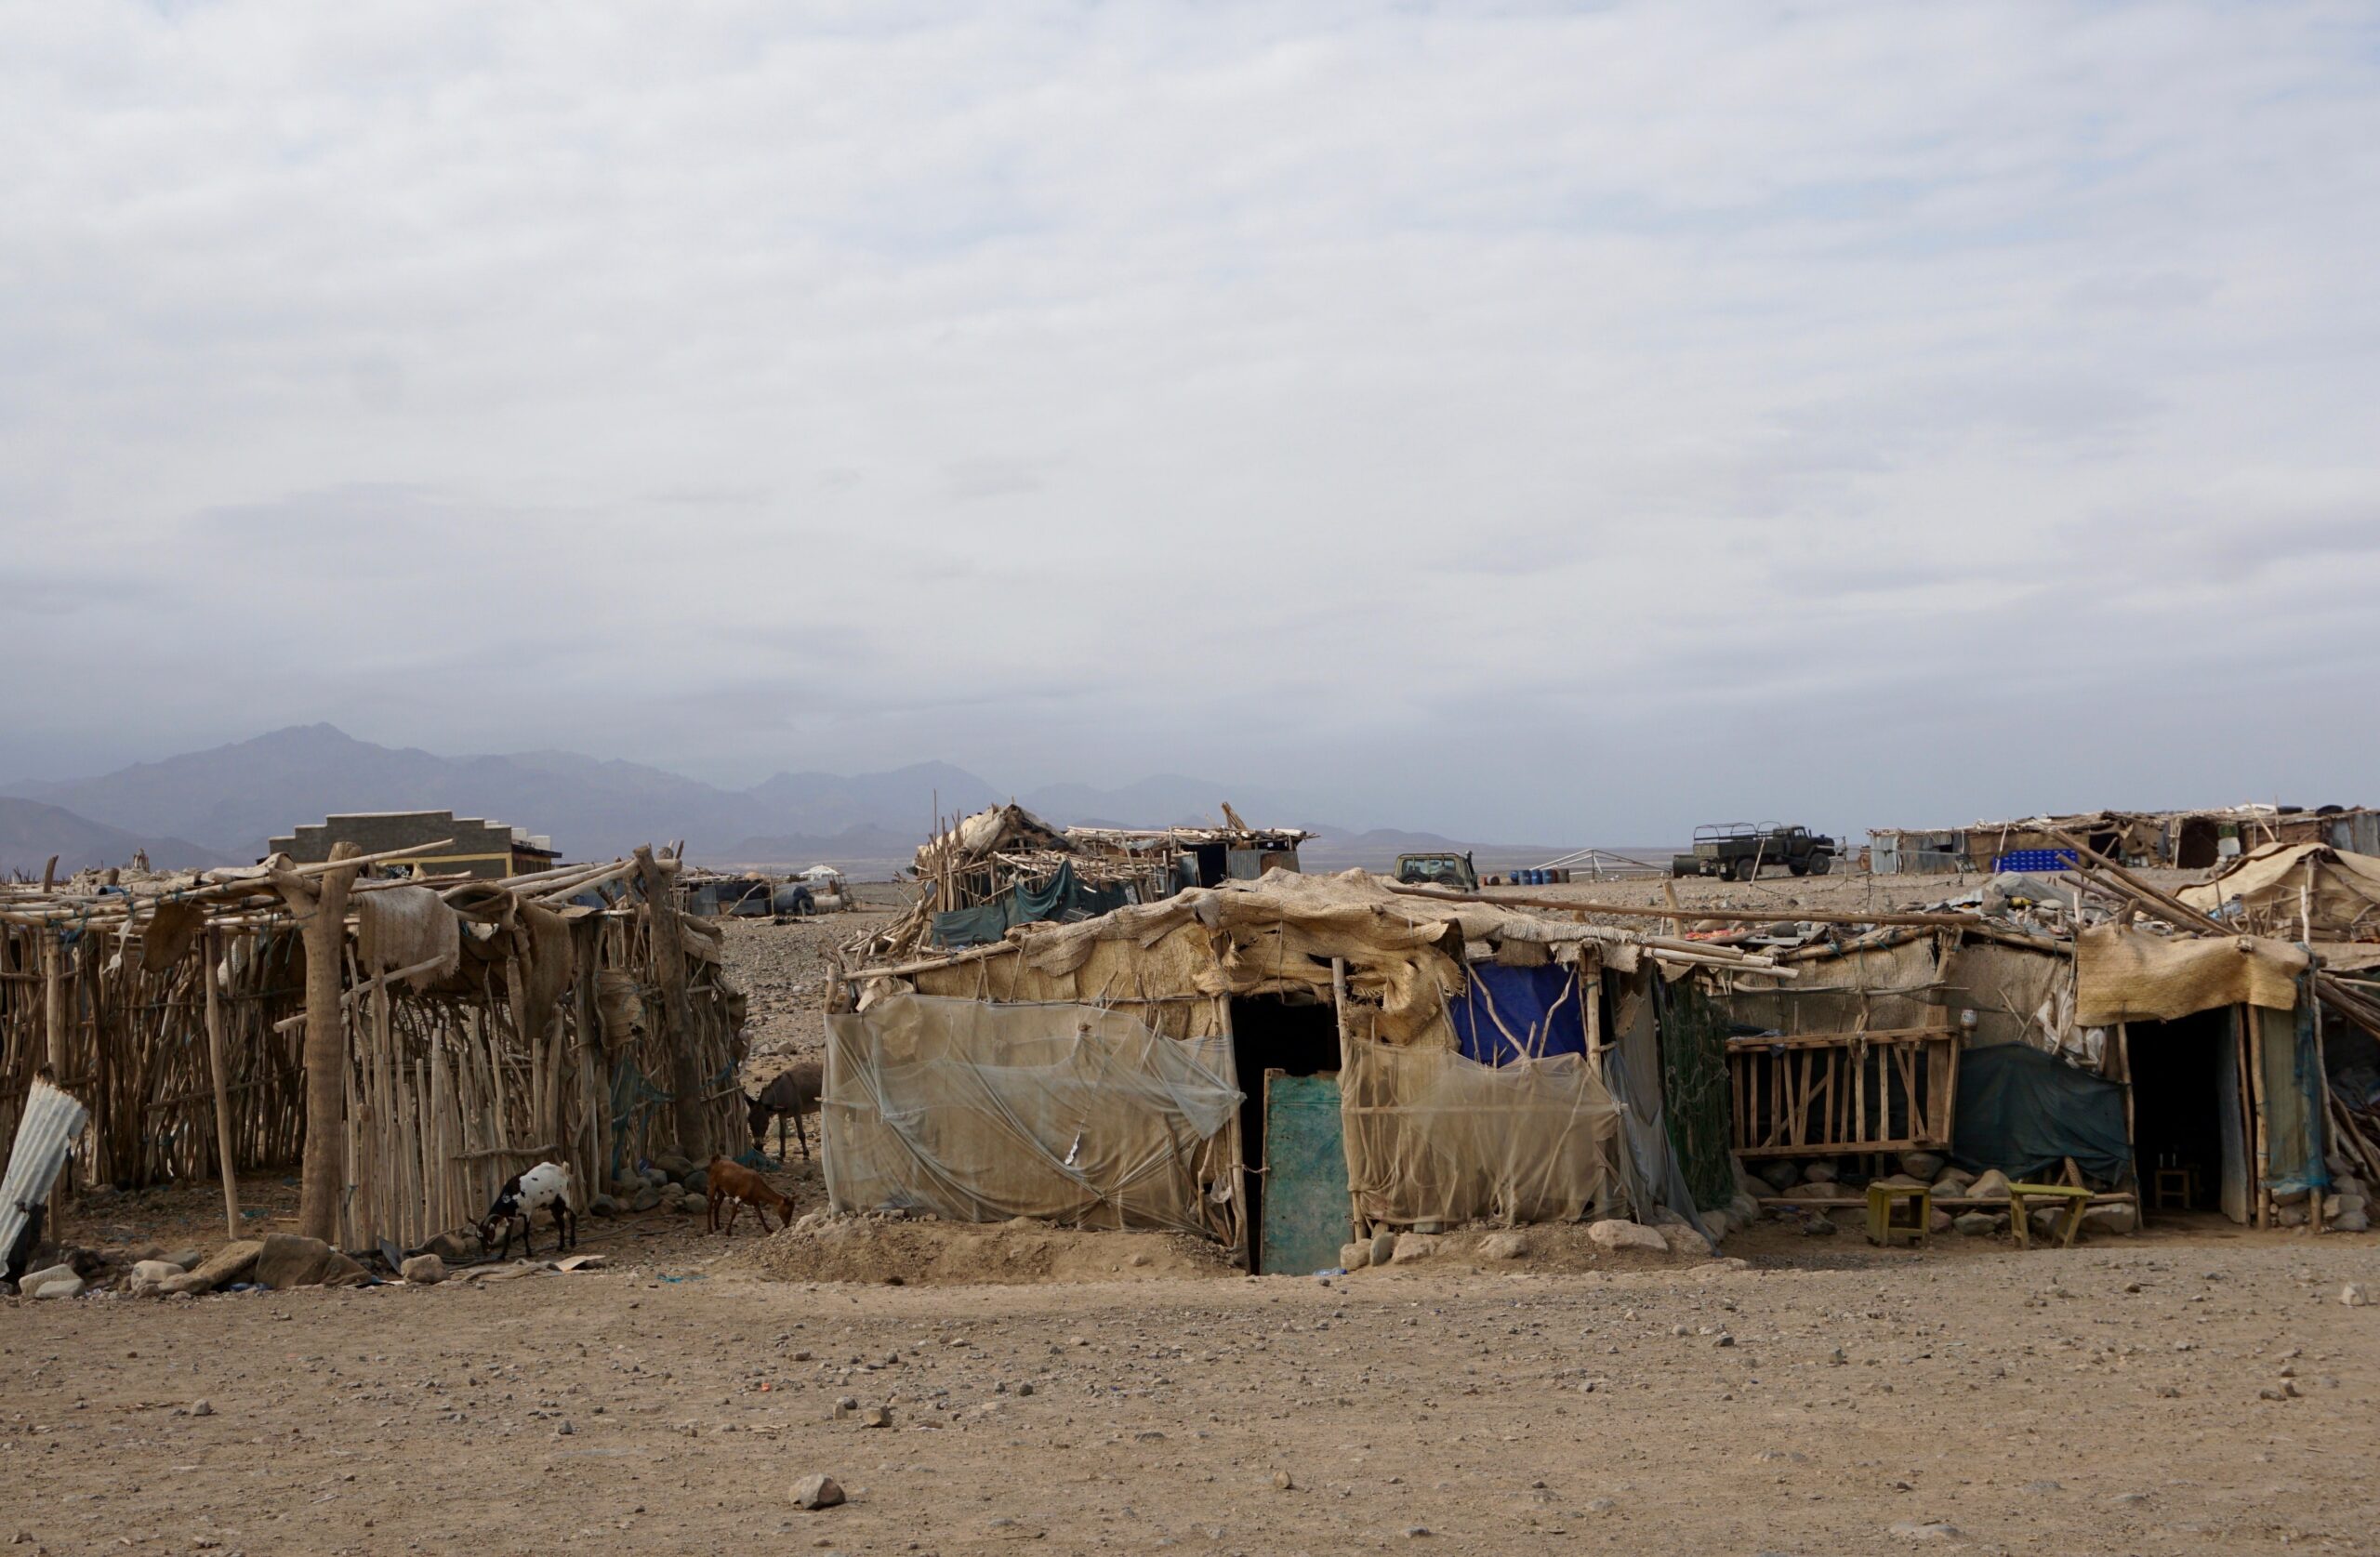 Des huttes comme celles-ci, dans la région Afar en Éthiopie, servent d'abri à de nombreuses personnes déplacées dans la région, au cours de deux années de guerre civile brutale. Crédits image : Marissa Bortlik, Source : Licence UnsplashHuts like these ones in Ethiopia's Afar region, provide shelter for many of the region's displaced, amid two years of brutal civil war. Image Credits; Marissa Bortlik, Source: Unsplash